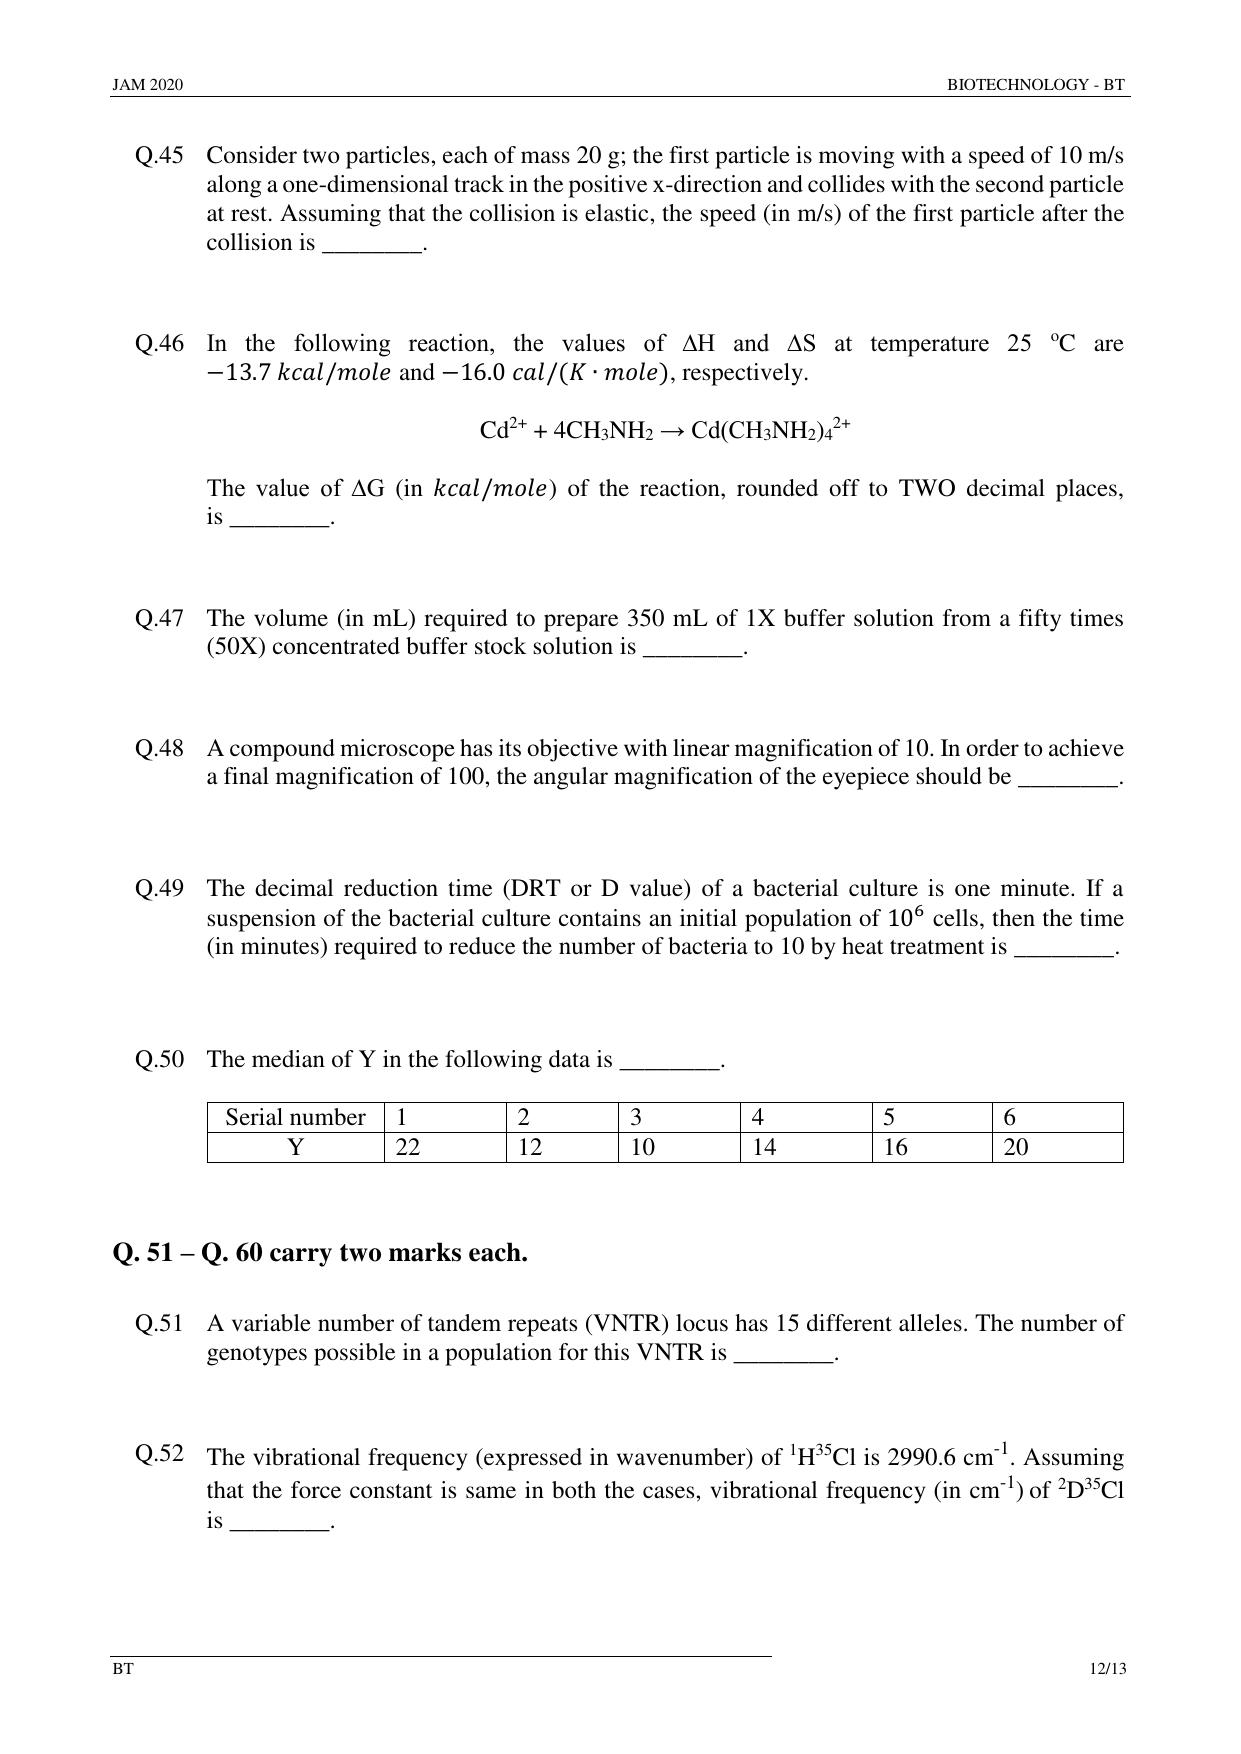 JAM 2020: BT Question Paper - Page 12